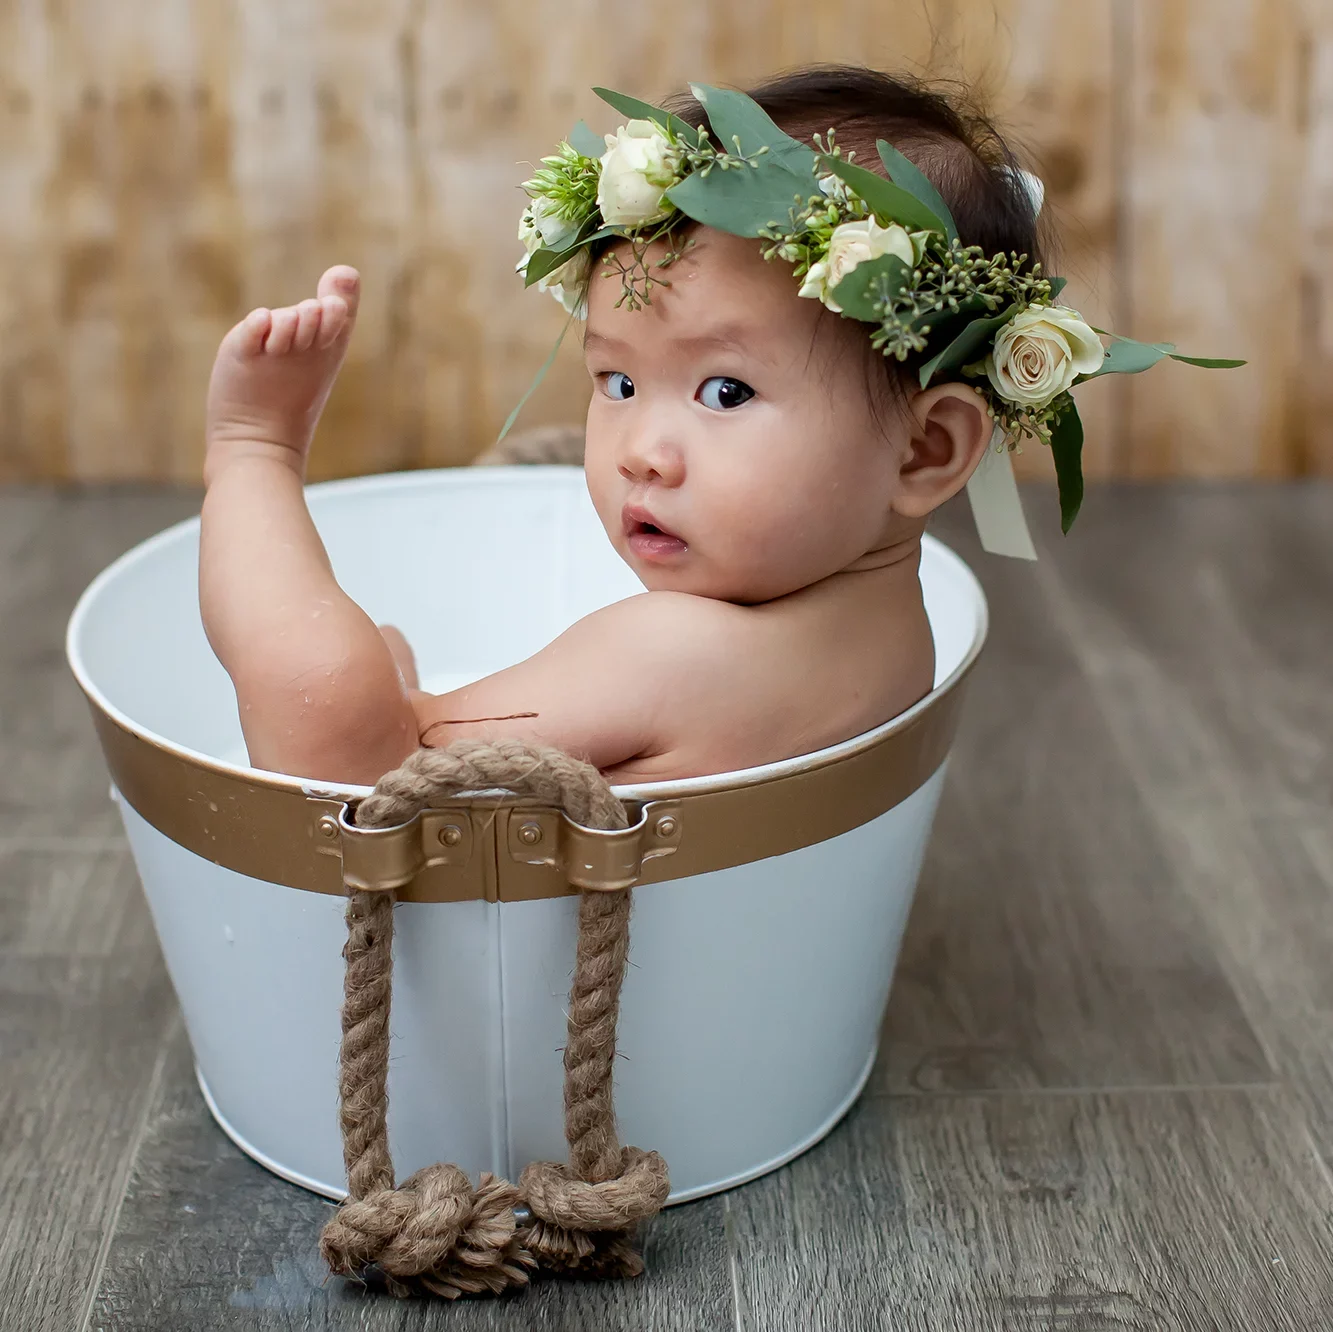 Baby's first birthday photo session - milk bath & flower crown